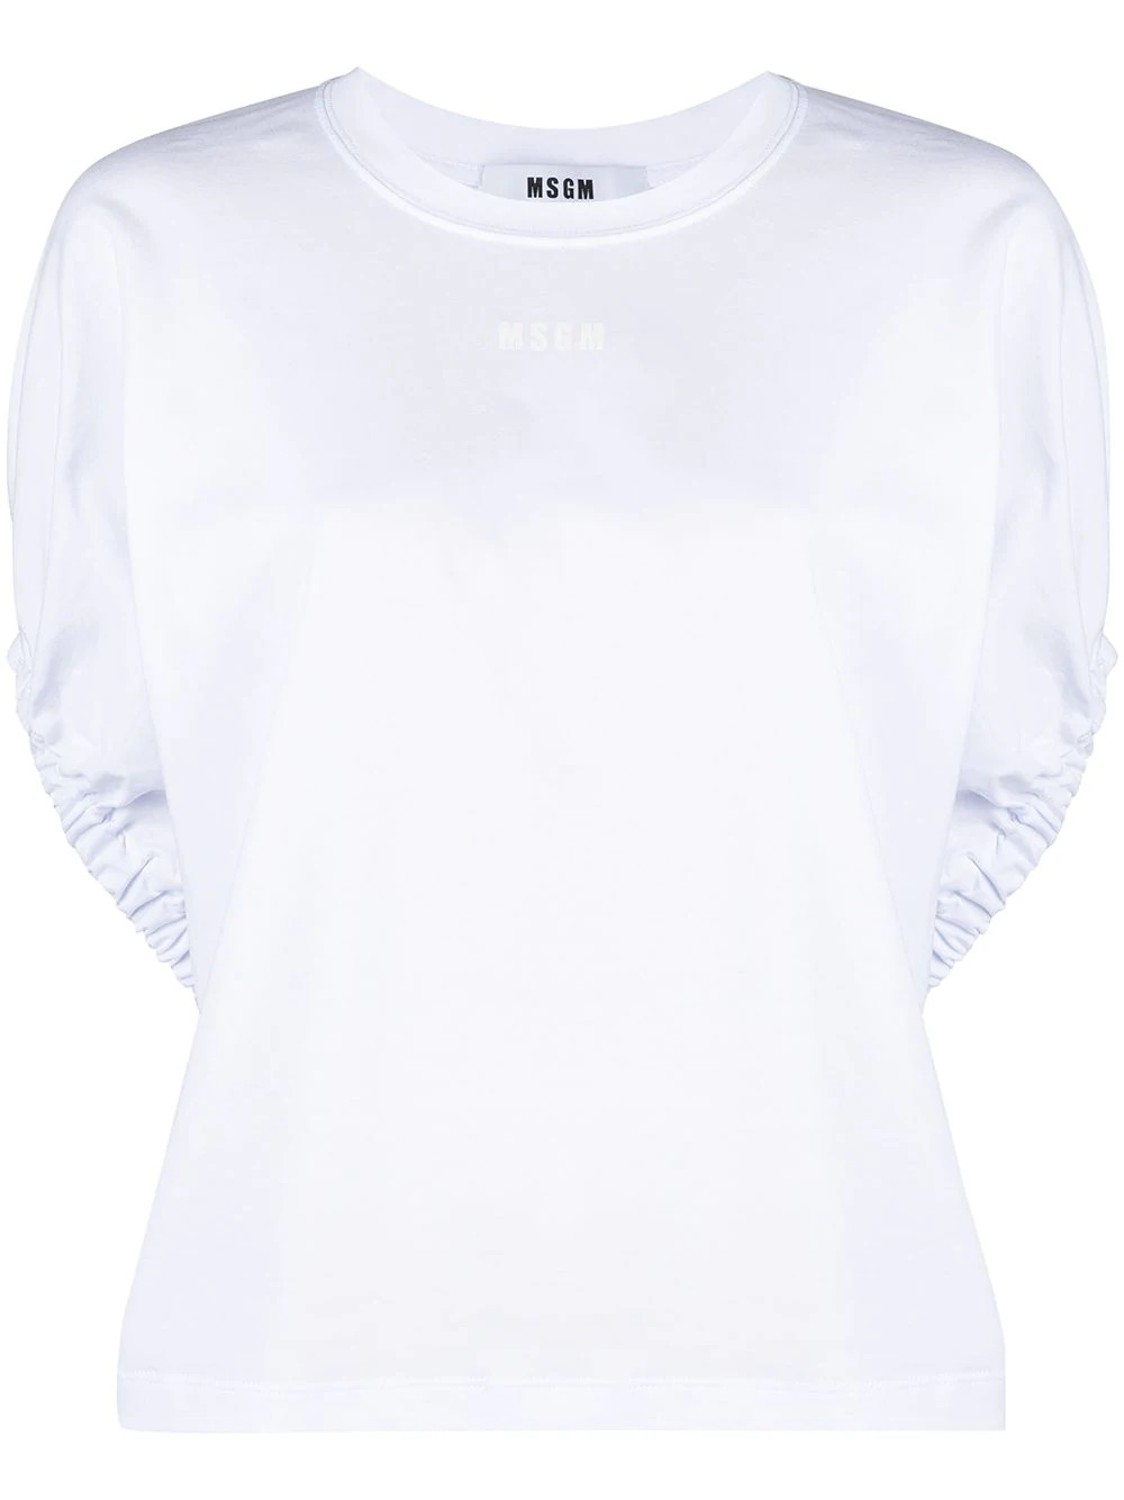 shop MSGM Sales T-shirts: T-shirts MSGM, girocollo, oversize, maniche corte, a pipistrello, arricciate.

Composizione: 100% cotone. number 2097